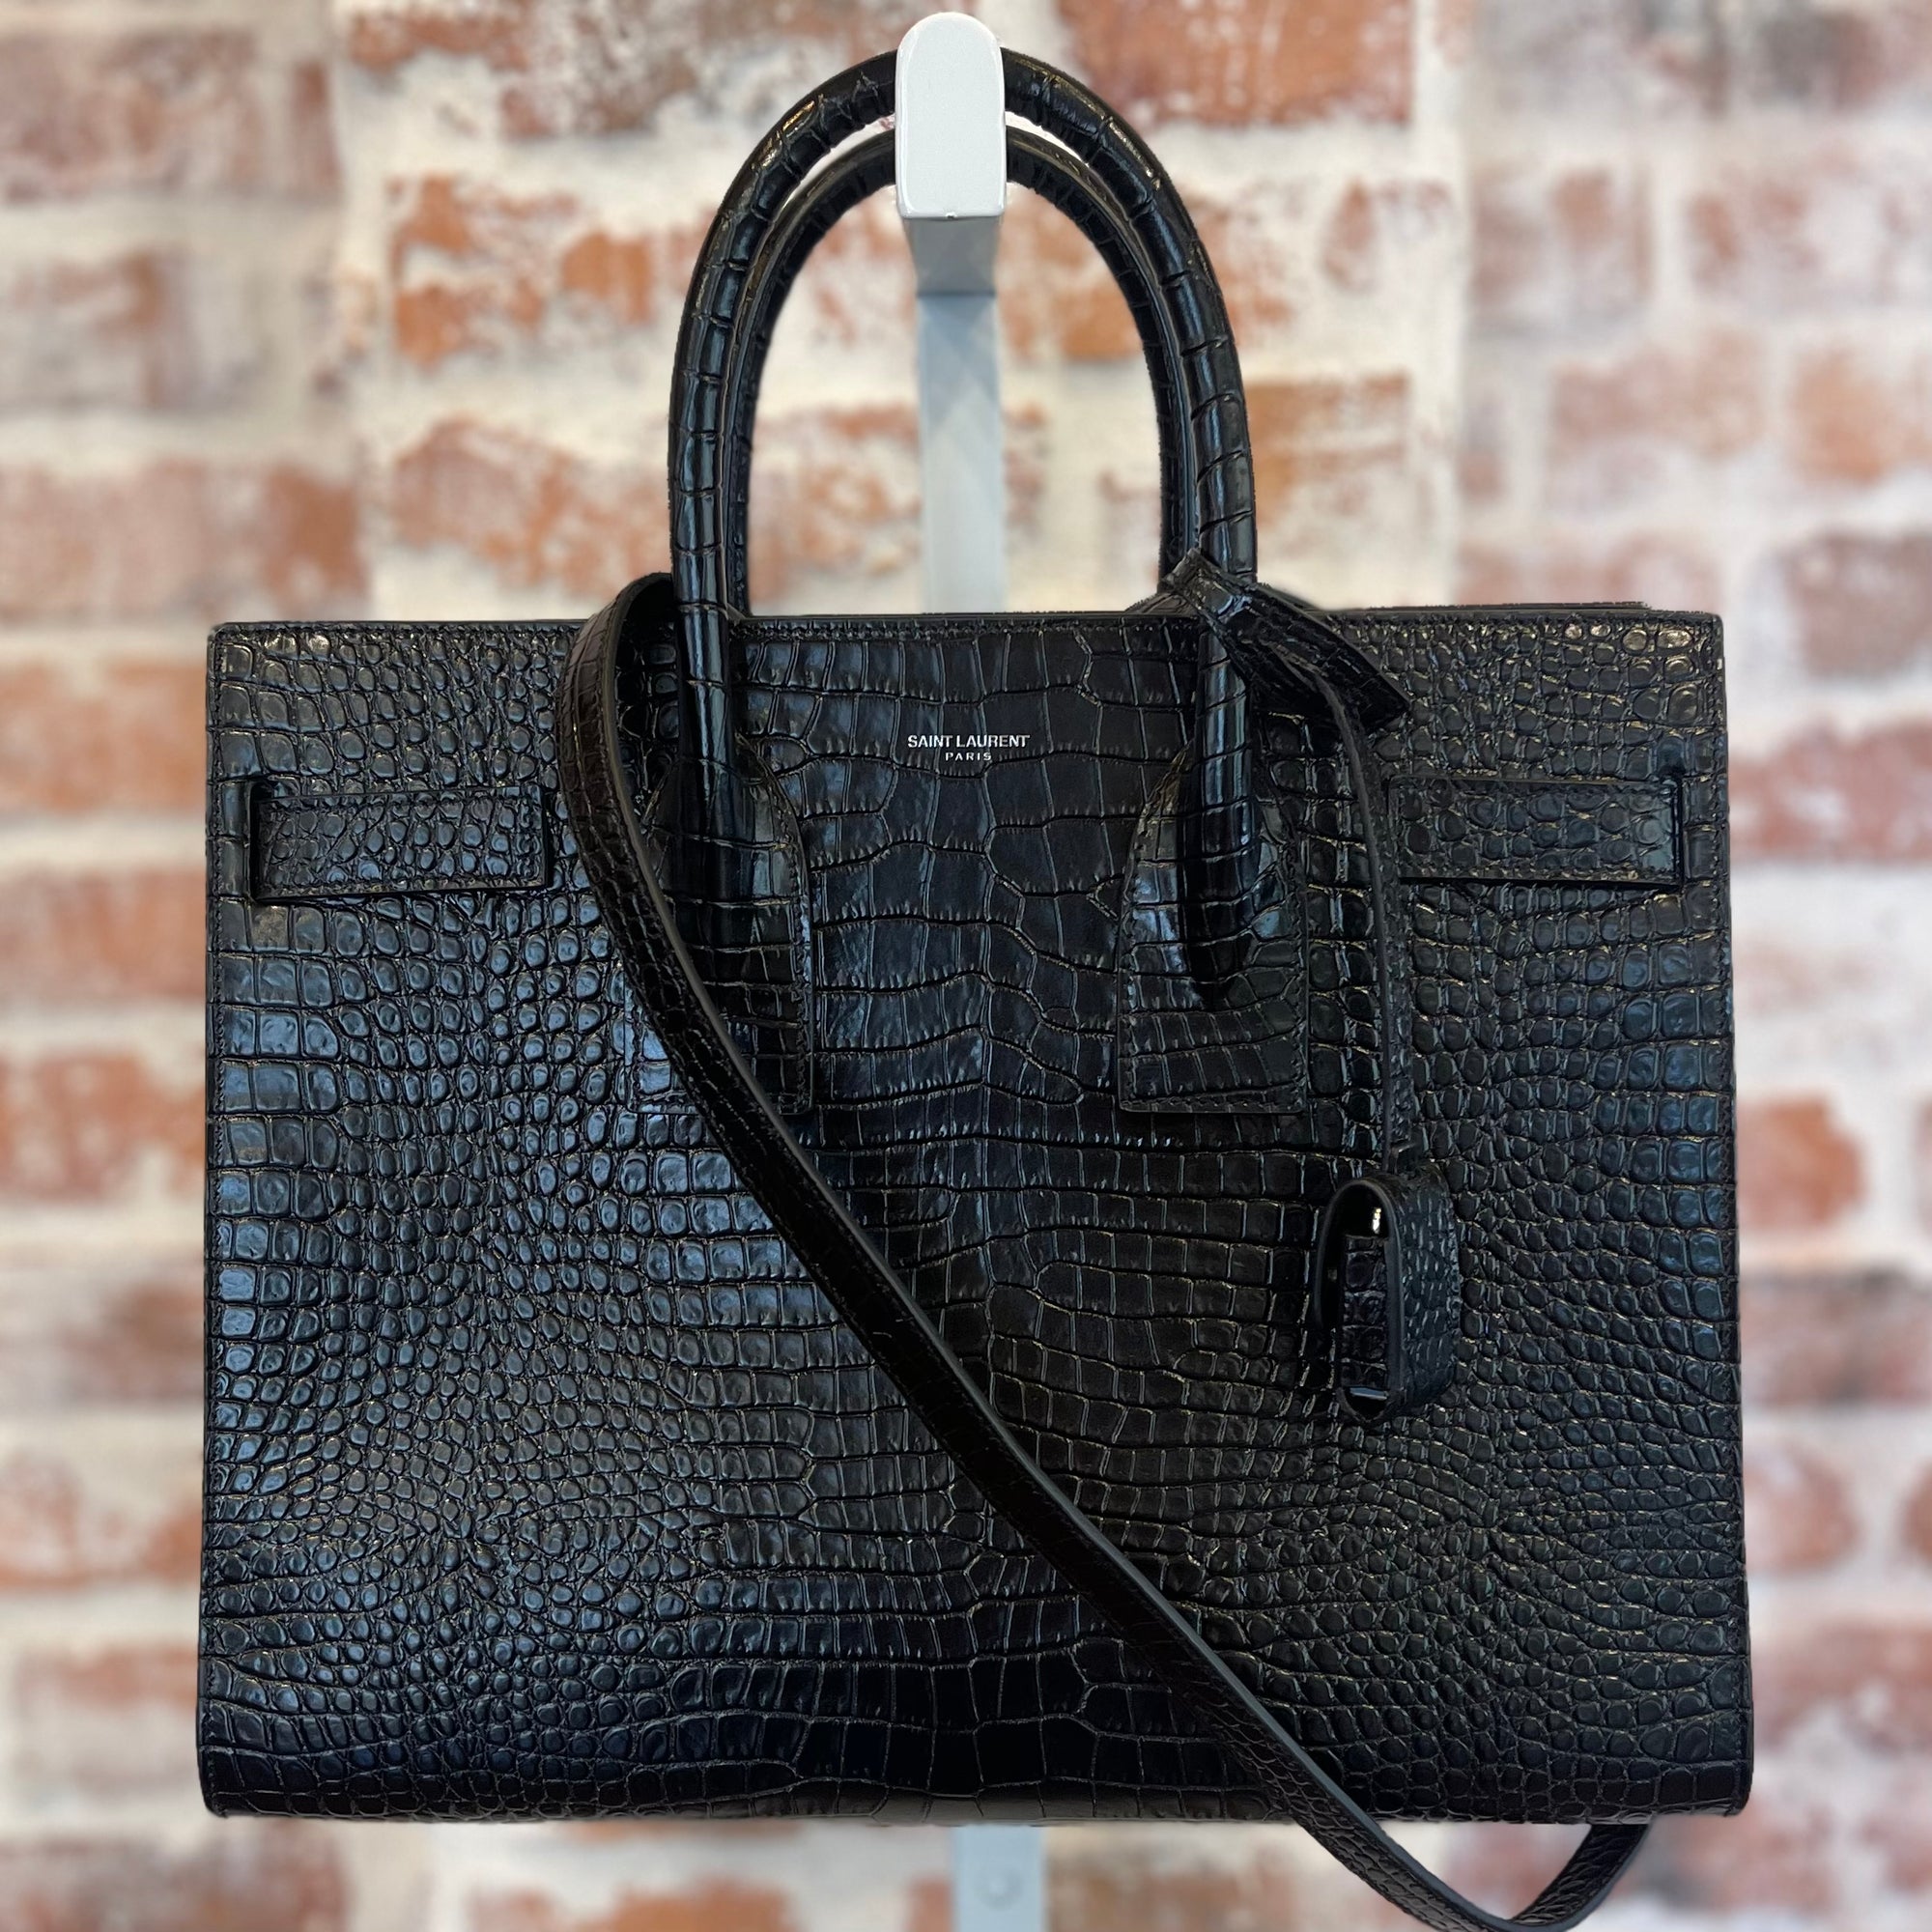 SAINT LAURENT Black Croc Embossed Leather Sac De Jour